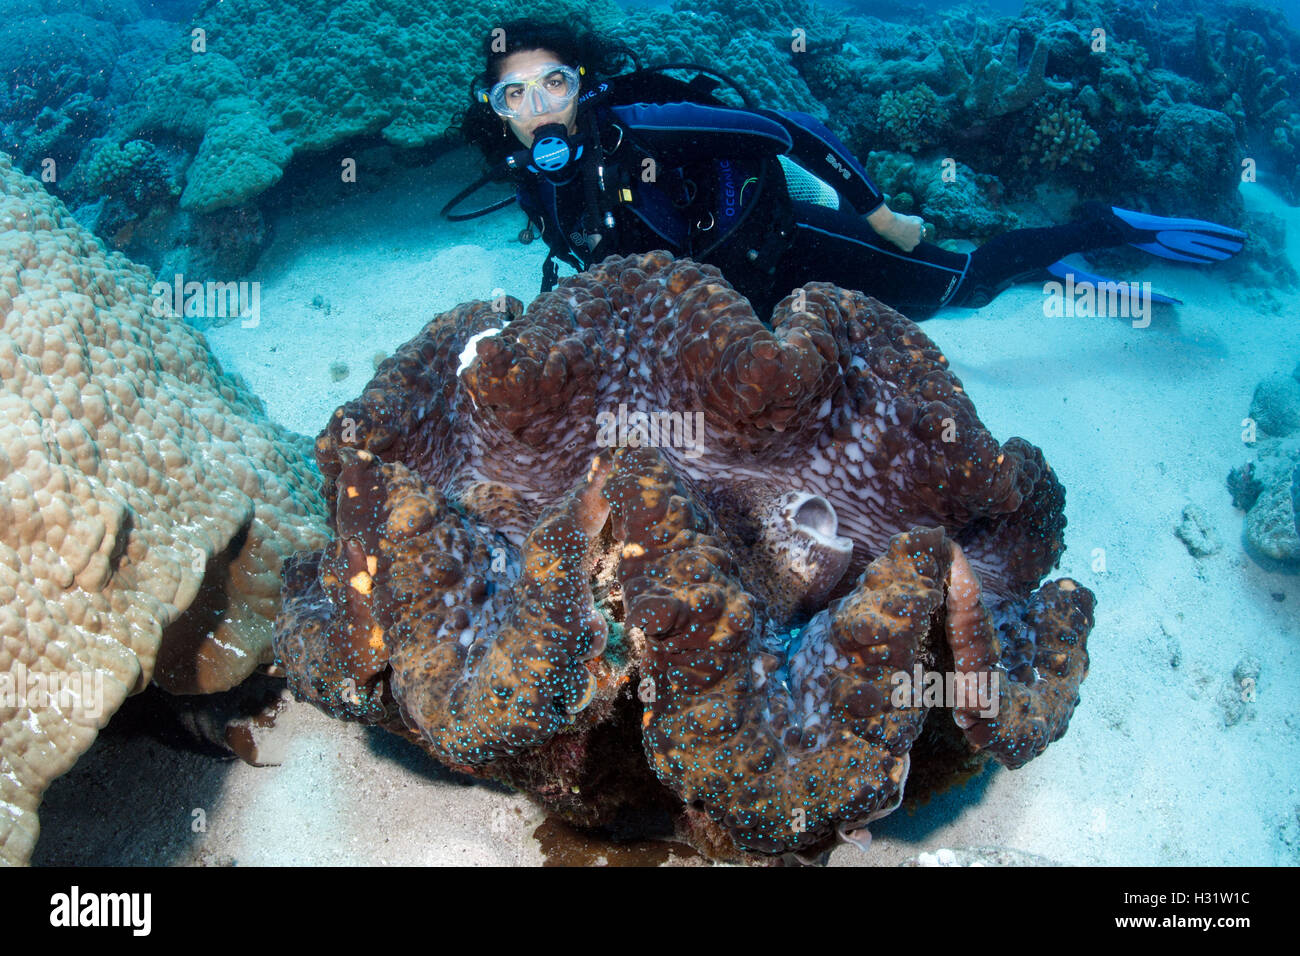 QZ40885-D. Vongola gigante (Tridacna gigas), 1 metro di larghezza, con scuba diver (modello rilasciato) per la scala. La Grande Barriera Corallina, Australia Foto Stock